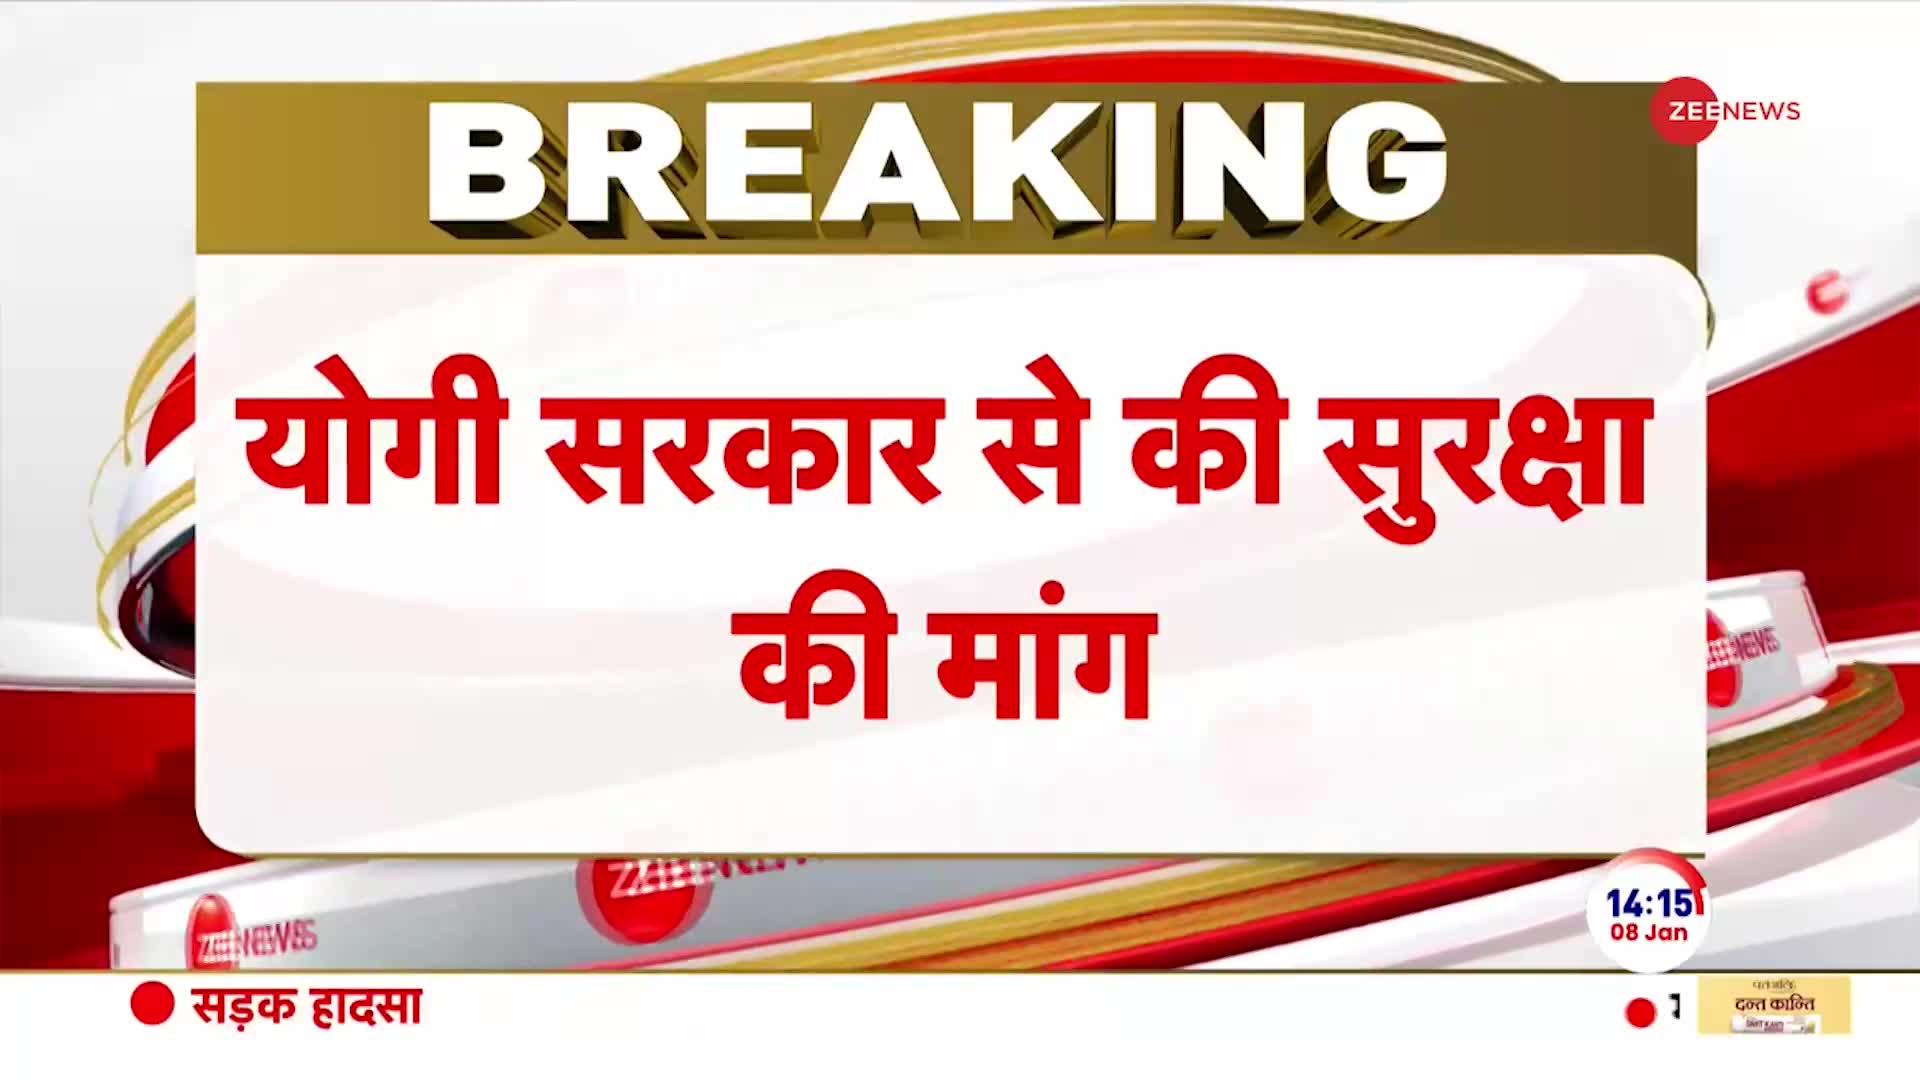 Mayawati Breaking News: 'सपा अति-पिछड़ों के साथ-साथ जबरदस्त दलित-विरोधी पार्टी भी है'